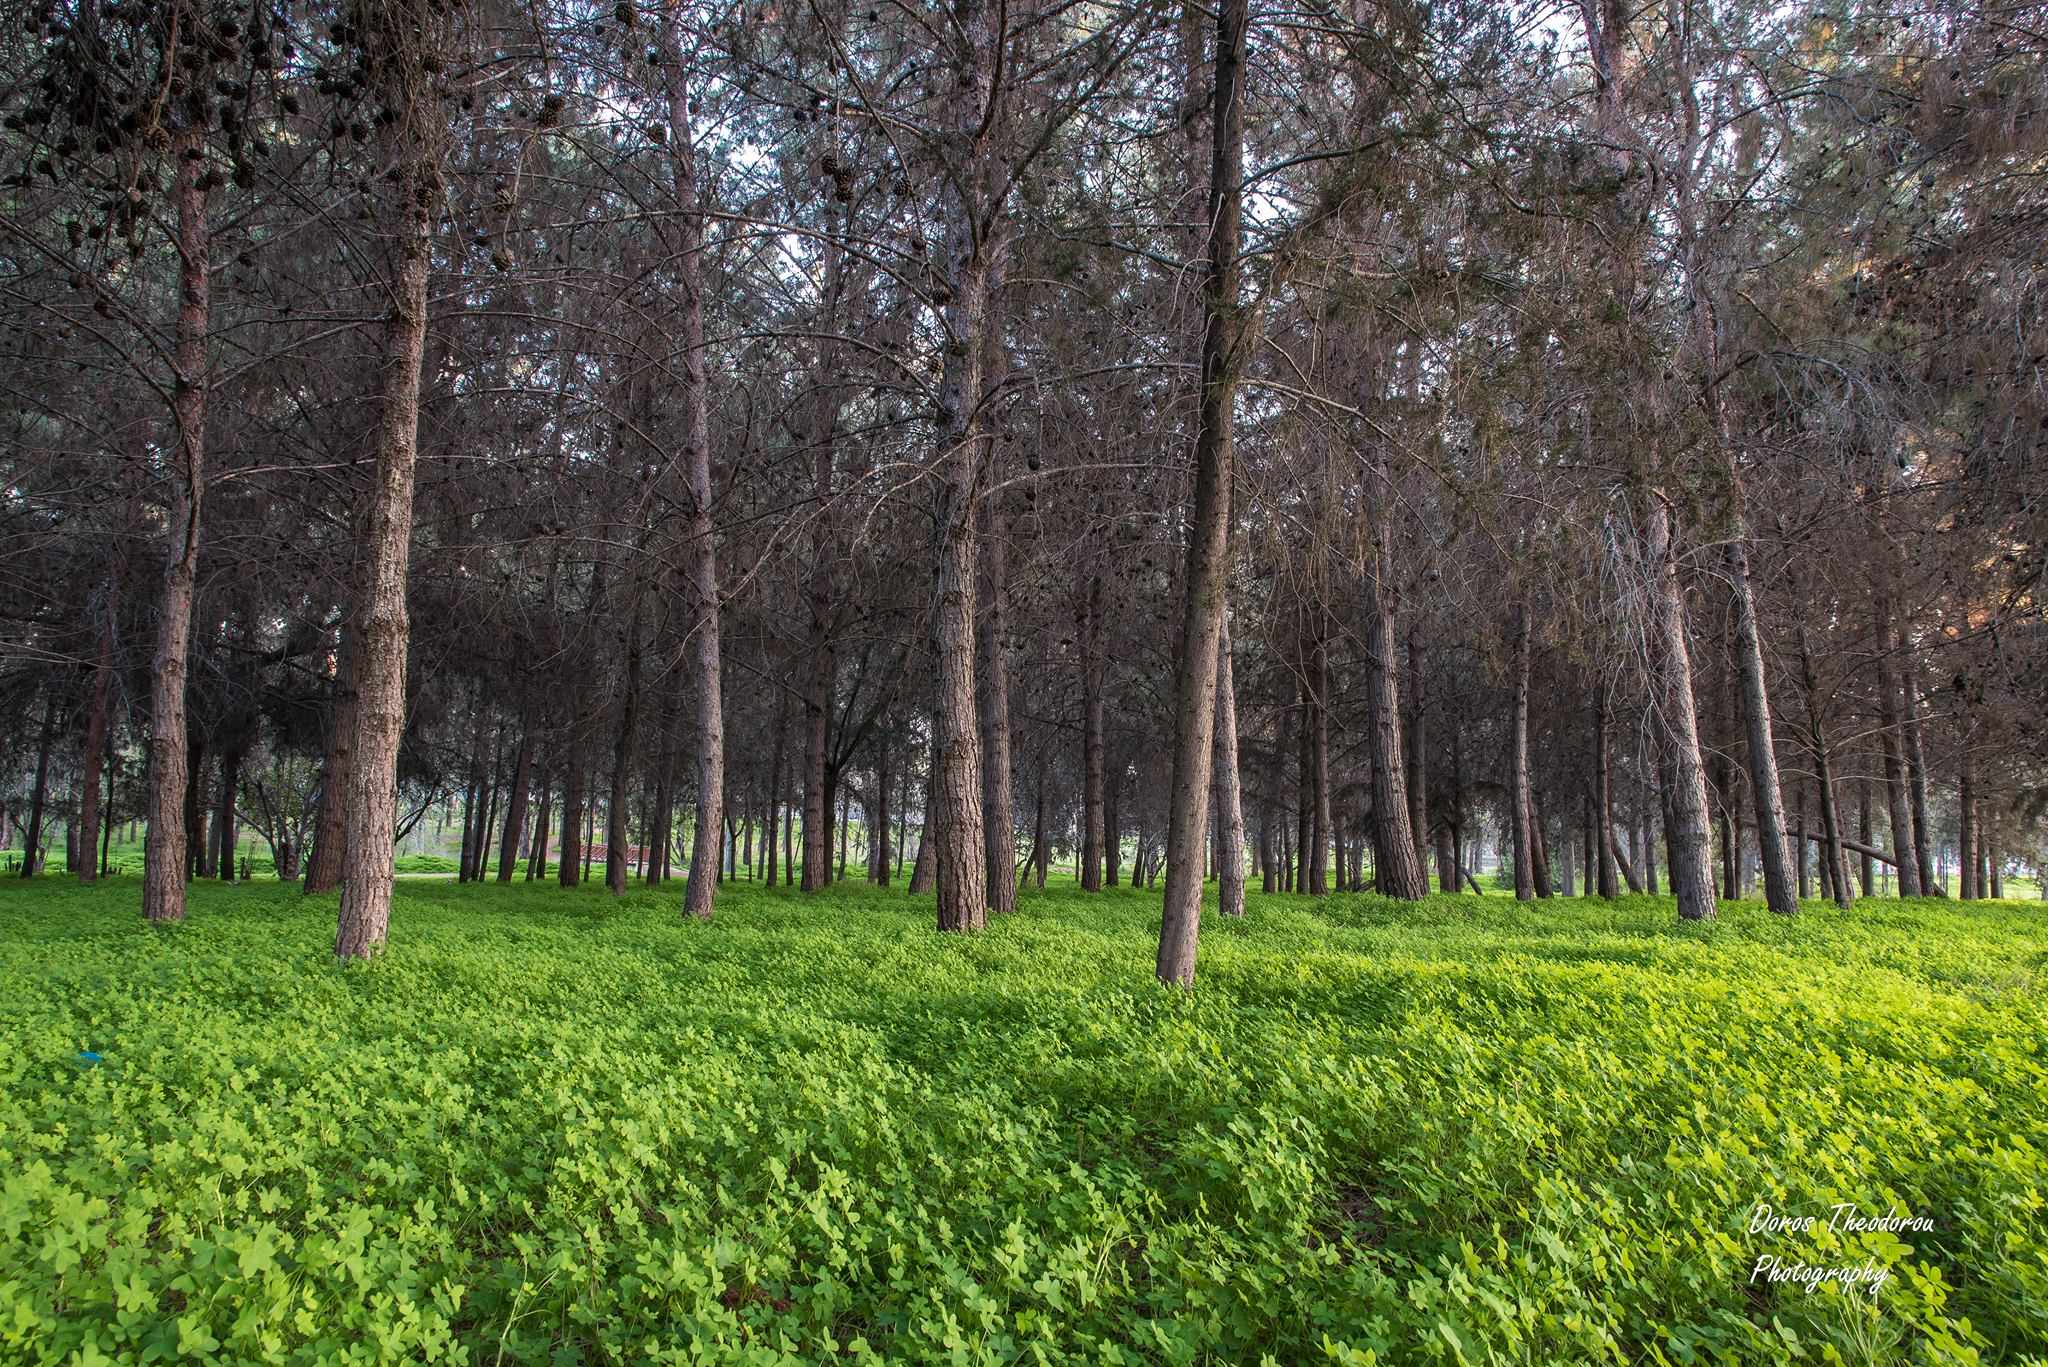 Let's Do it, Cyprus!: Давайте очистим Национальный лесной парк Педагогической академии в Никосии!